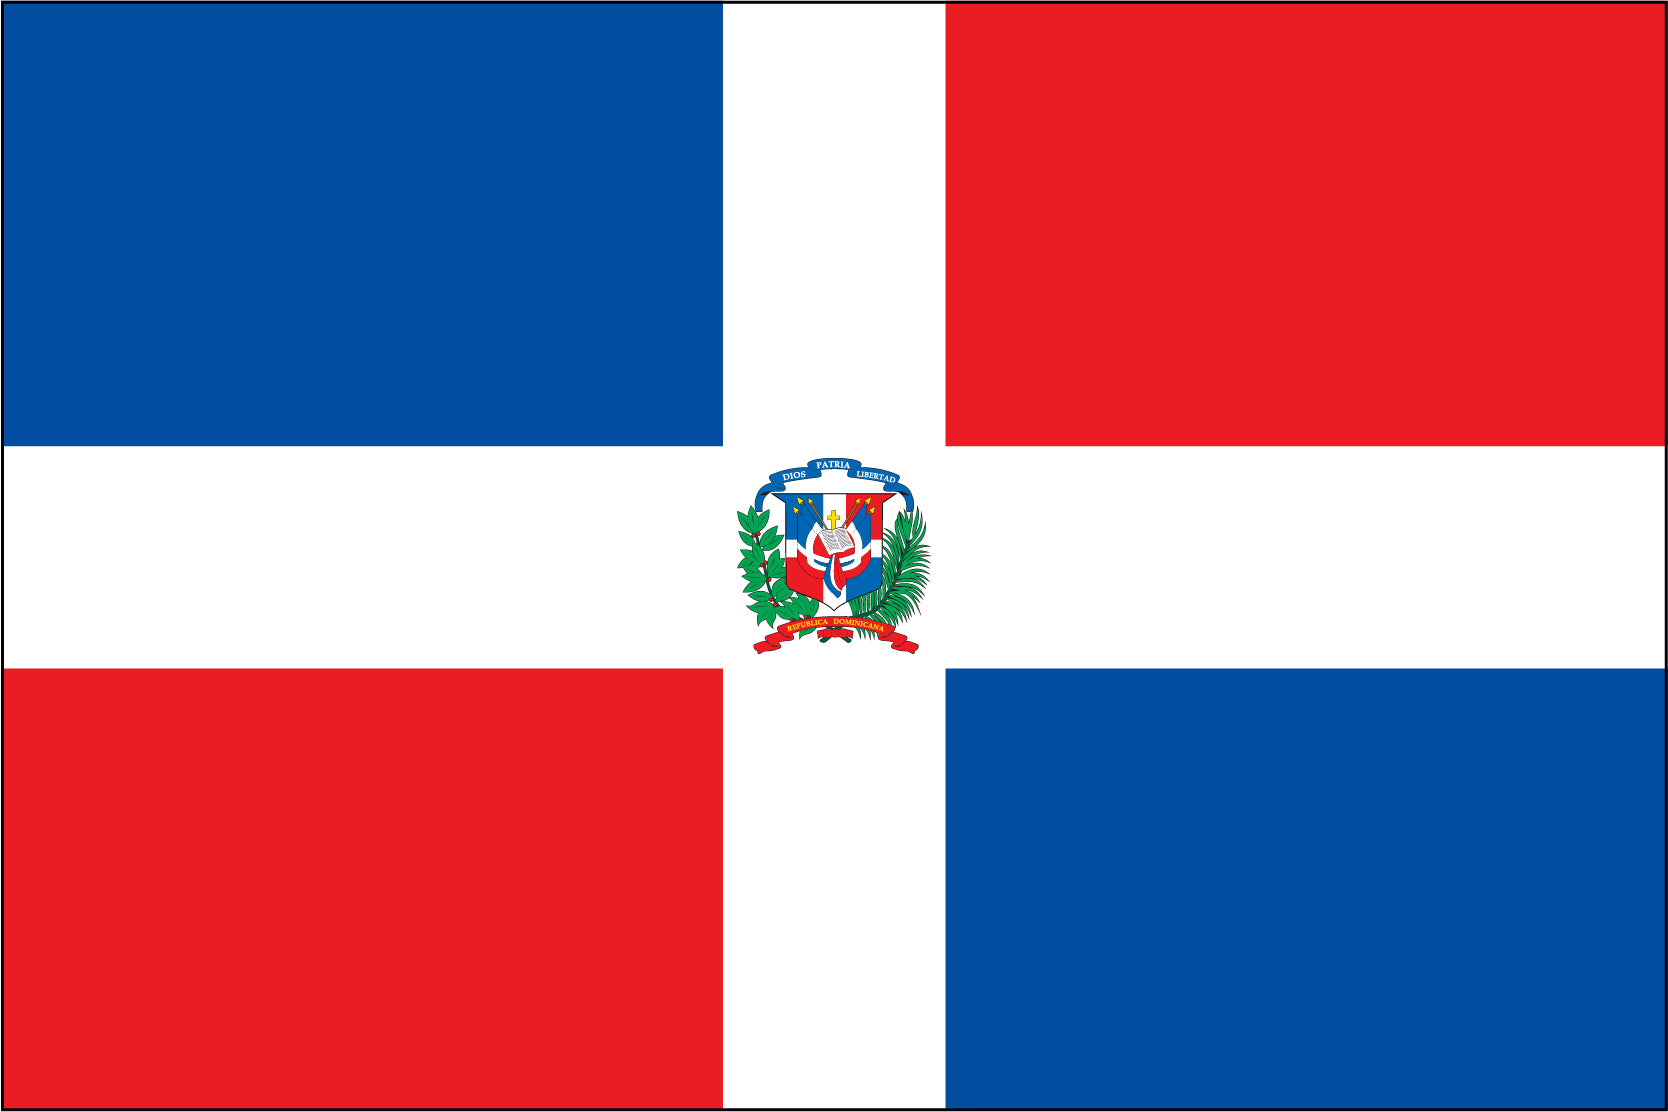 Dominican Republic (Governmental Seal)